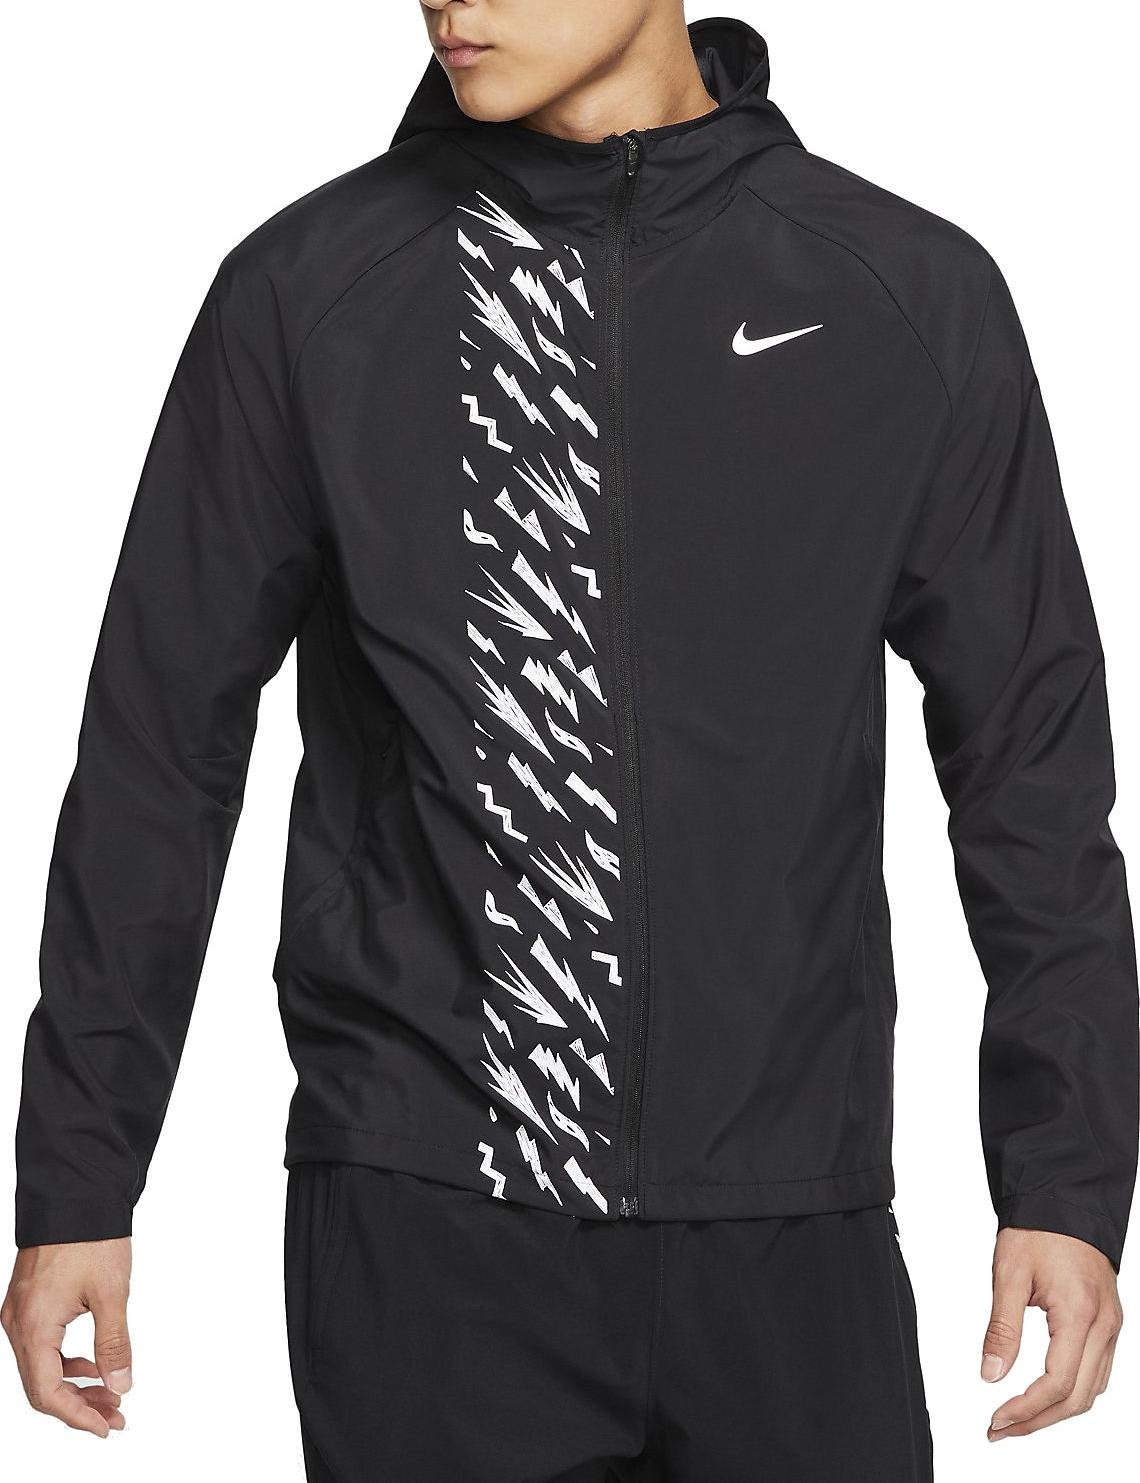 Pánská běžecká bunda s kapucí Nike Essential Windrunner